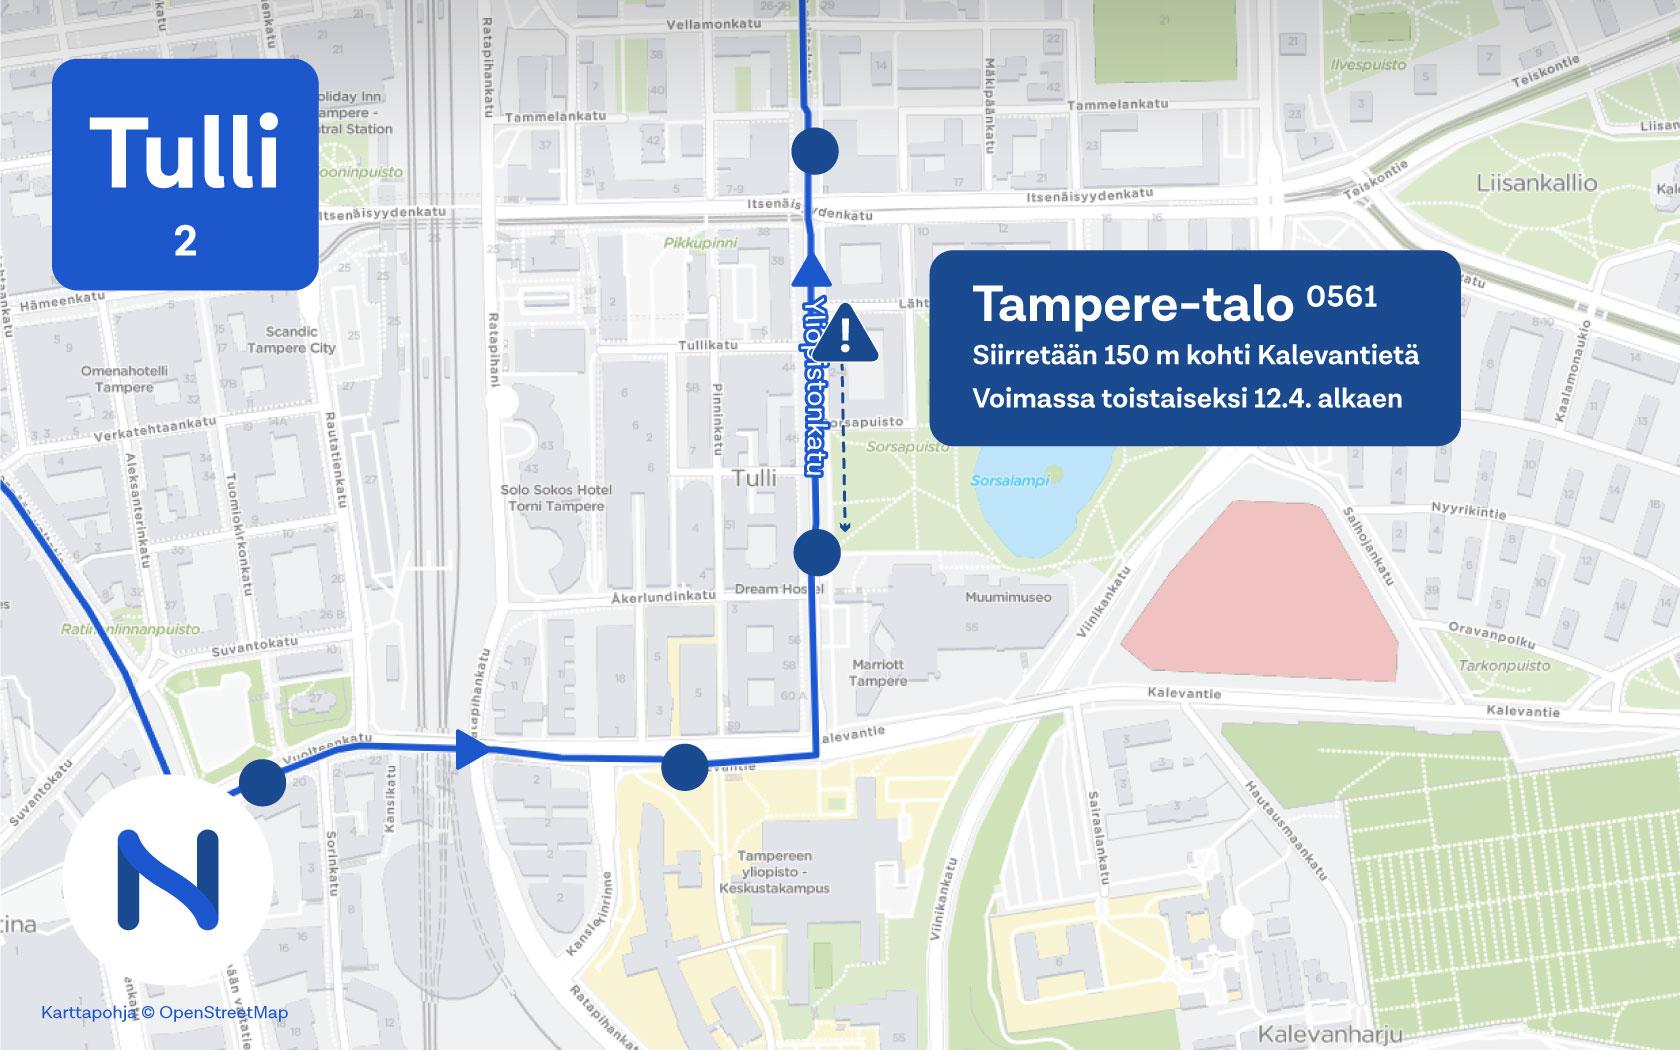 Tampere-talon pysäkki siirtyy 12. huhtikuuta. Muutos on voimassa toistaiseksi. Kuva: Tampereen seudun joukkoliikenne